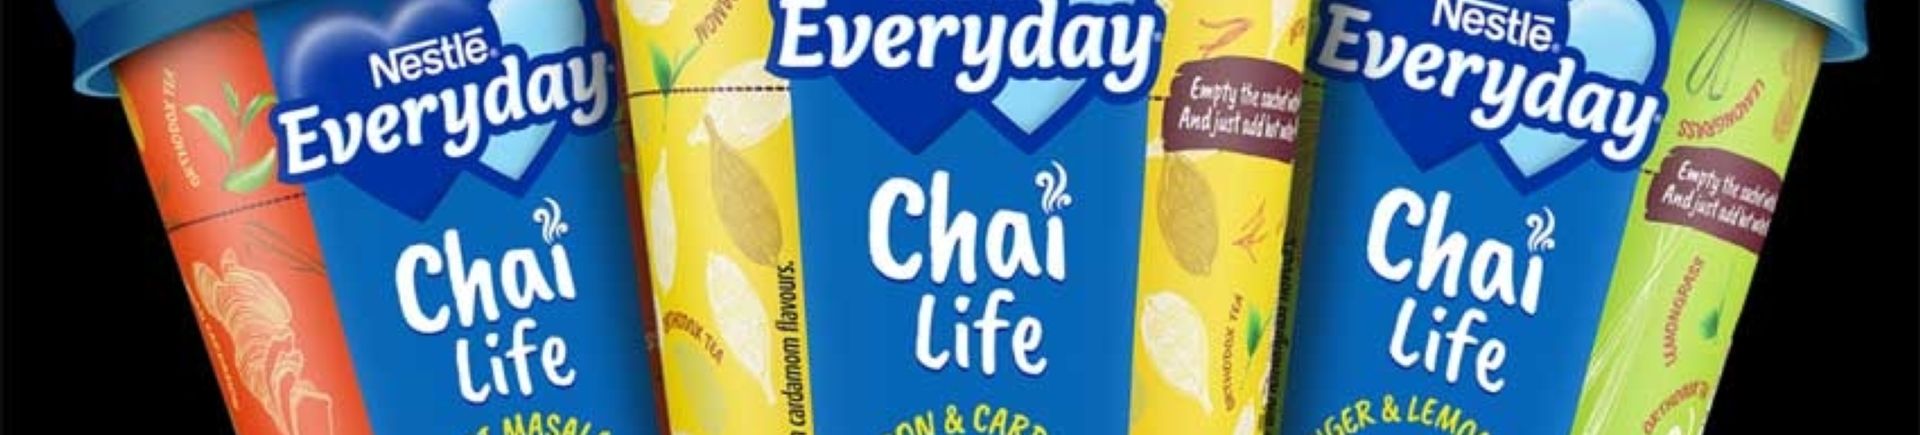 Nestlé-EVERYDAY Chai Life